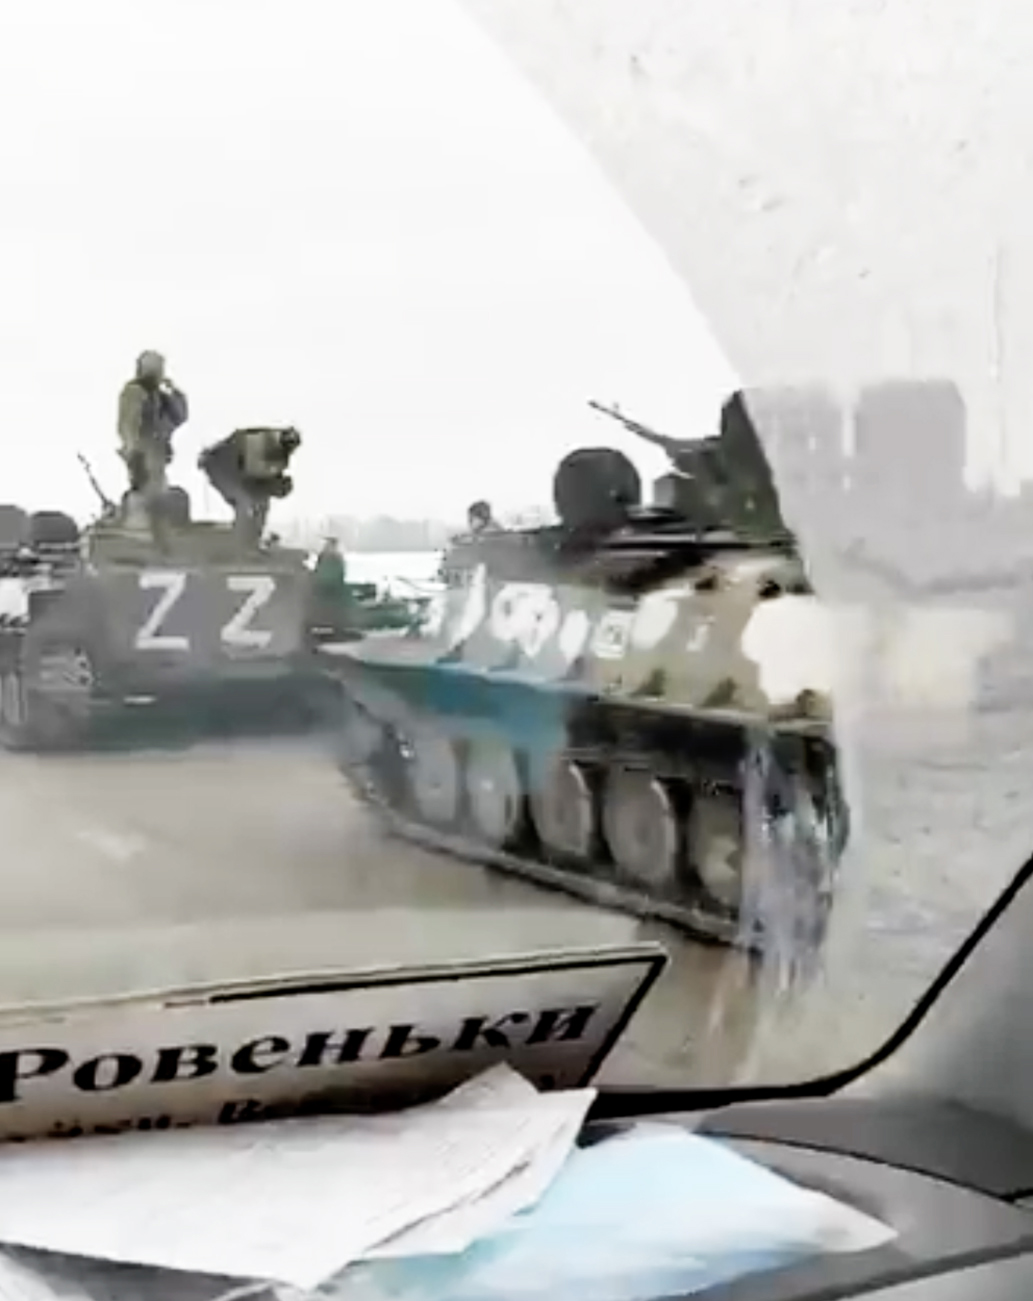 Los vehículos rusos fueron filmados en movimiento, todos marcados con el símbolo